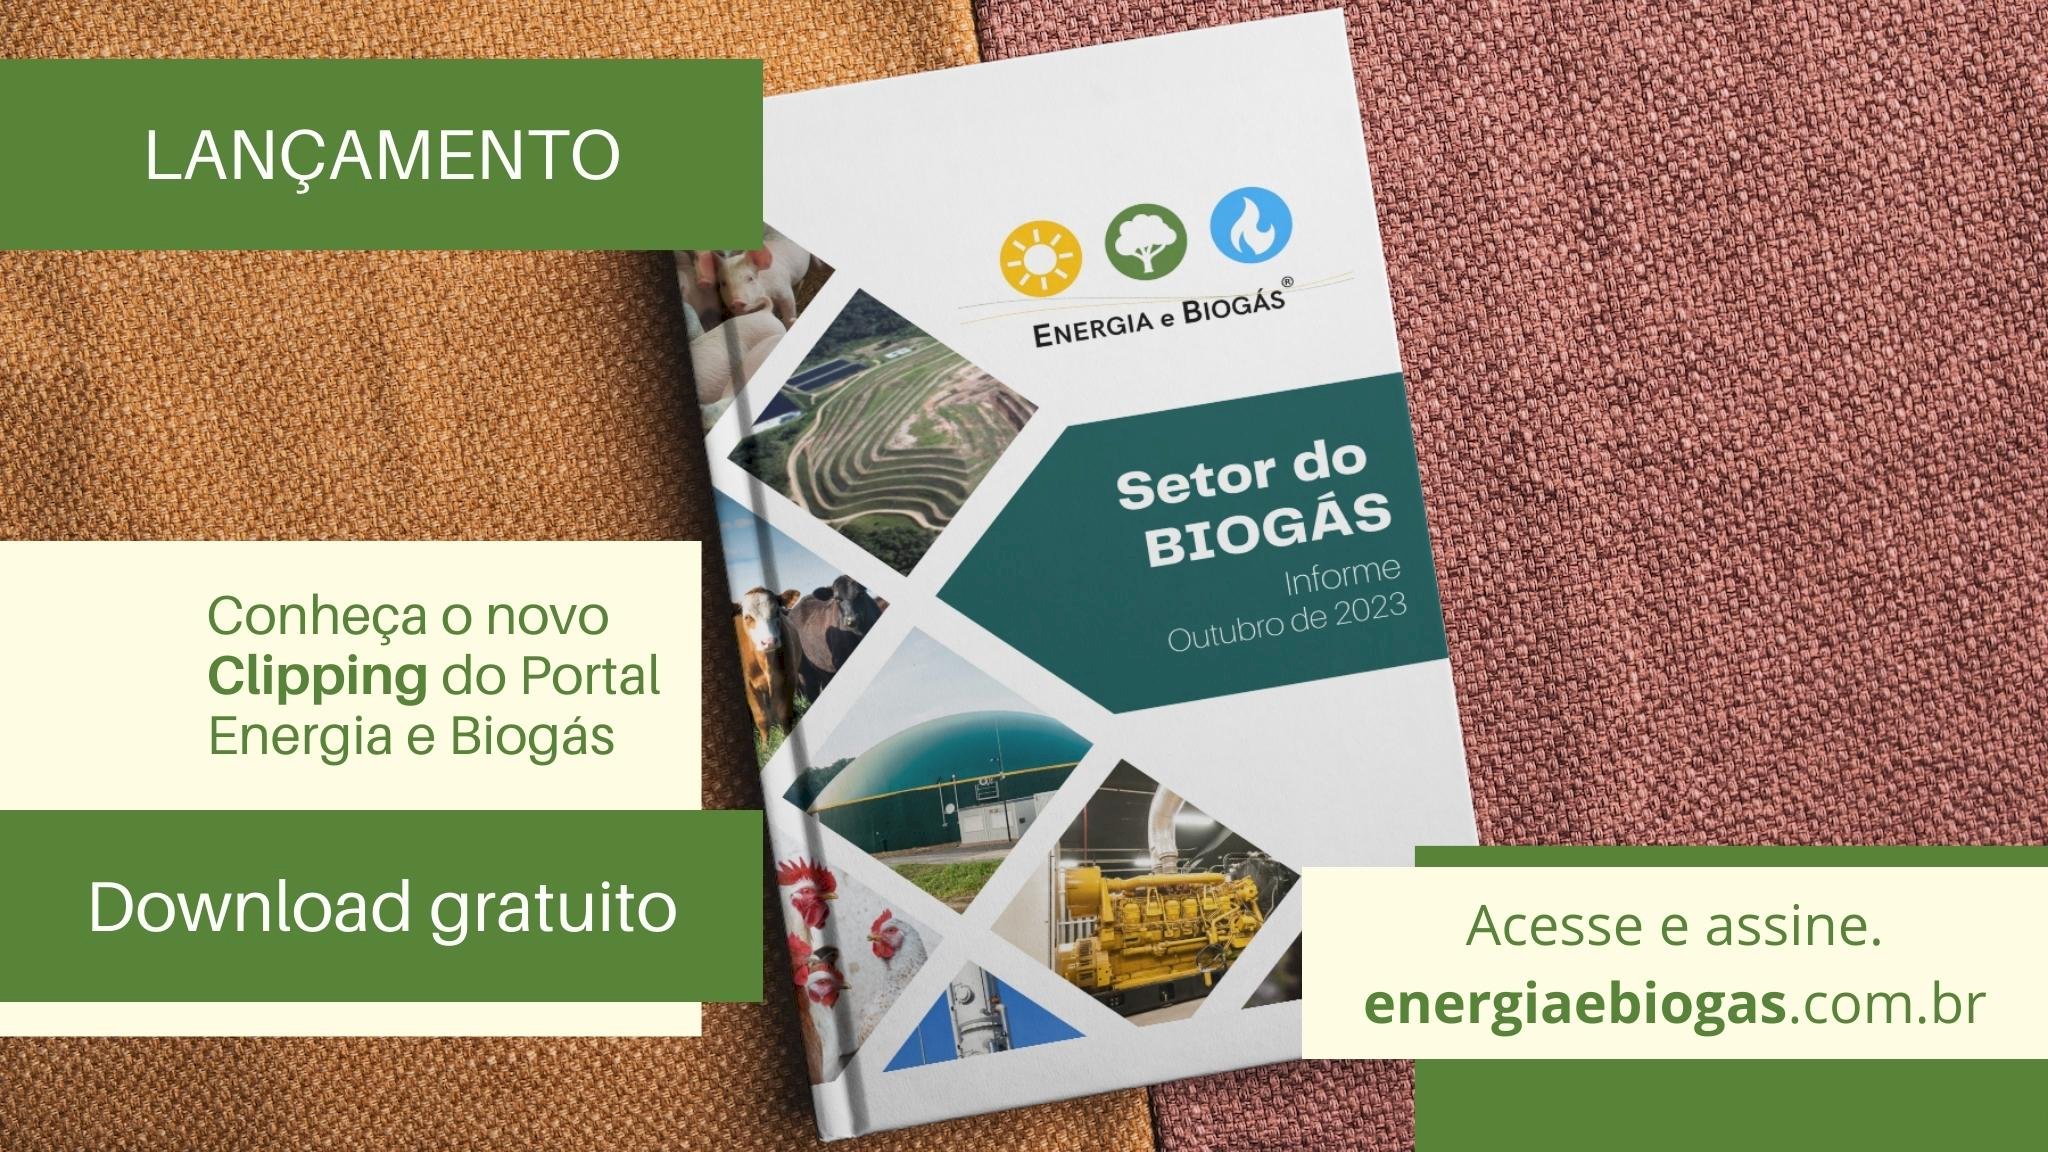 Lançamento: INFORME Setor do Biogás - outubro 2023